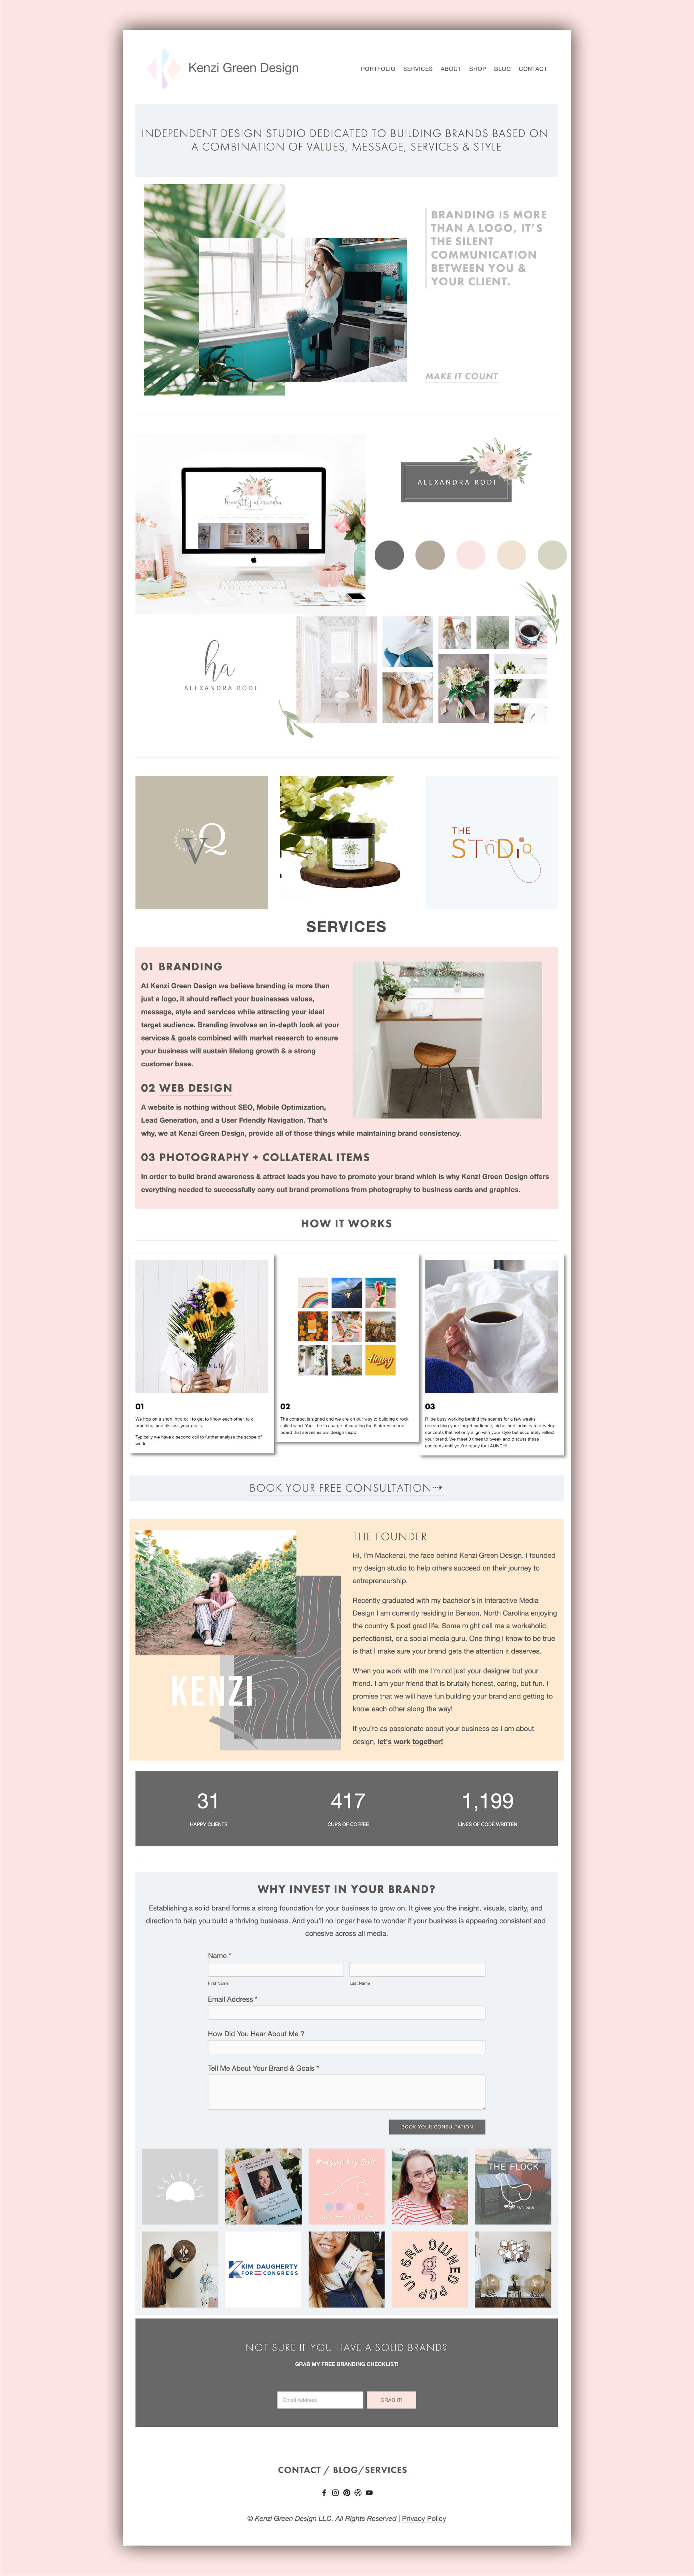 Kenzi Green Design studio website #websitedesign #designstudio #designerwebsite